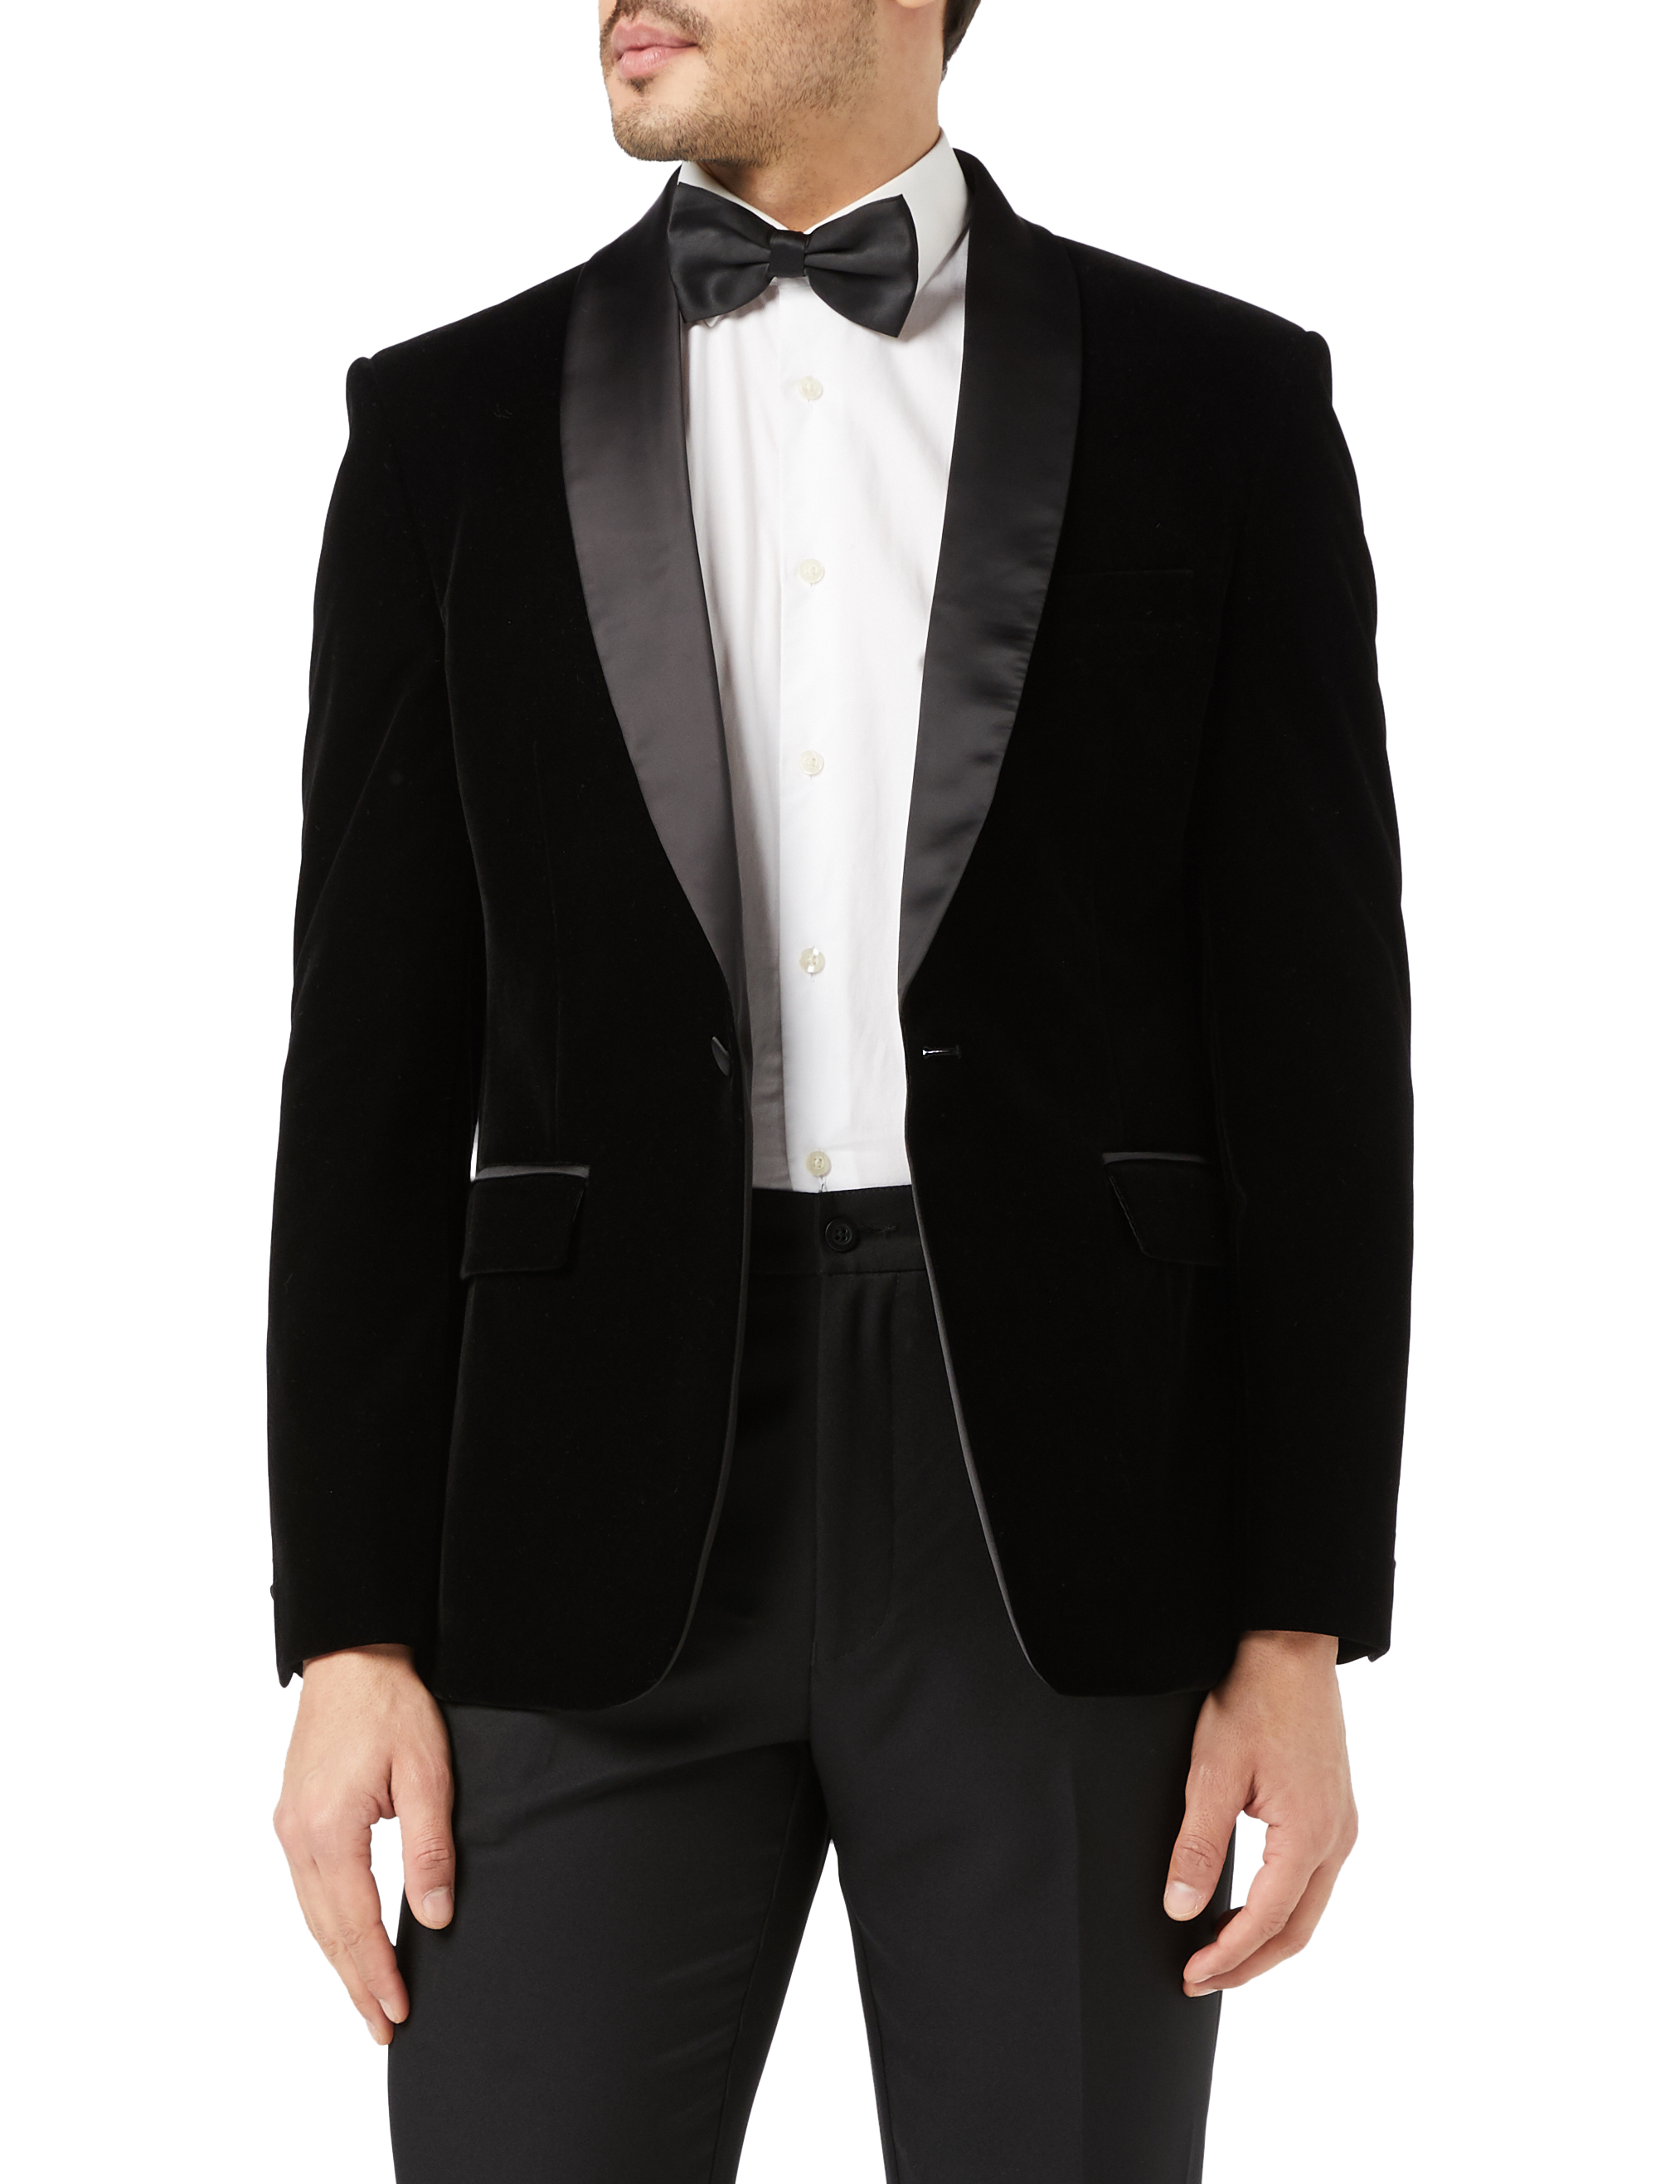 save money with deals Dobell Mens Black Tuxedo Dinner Jacket Regular ...